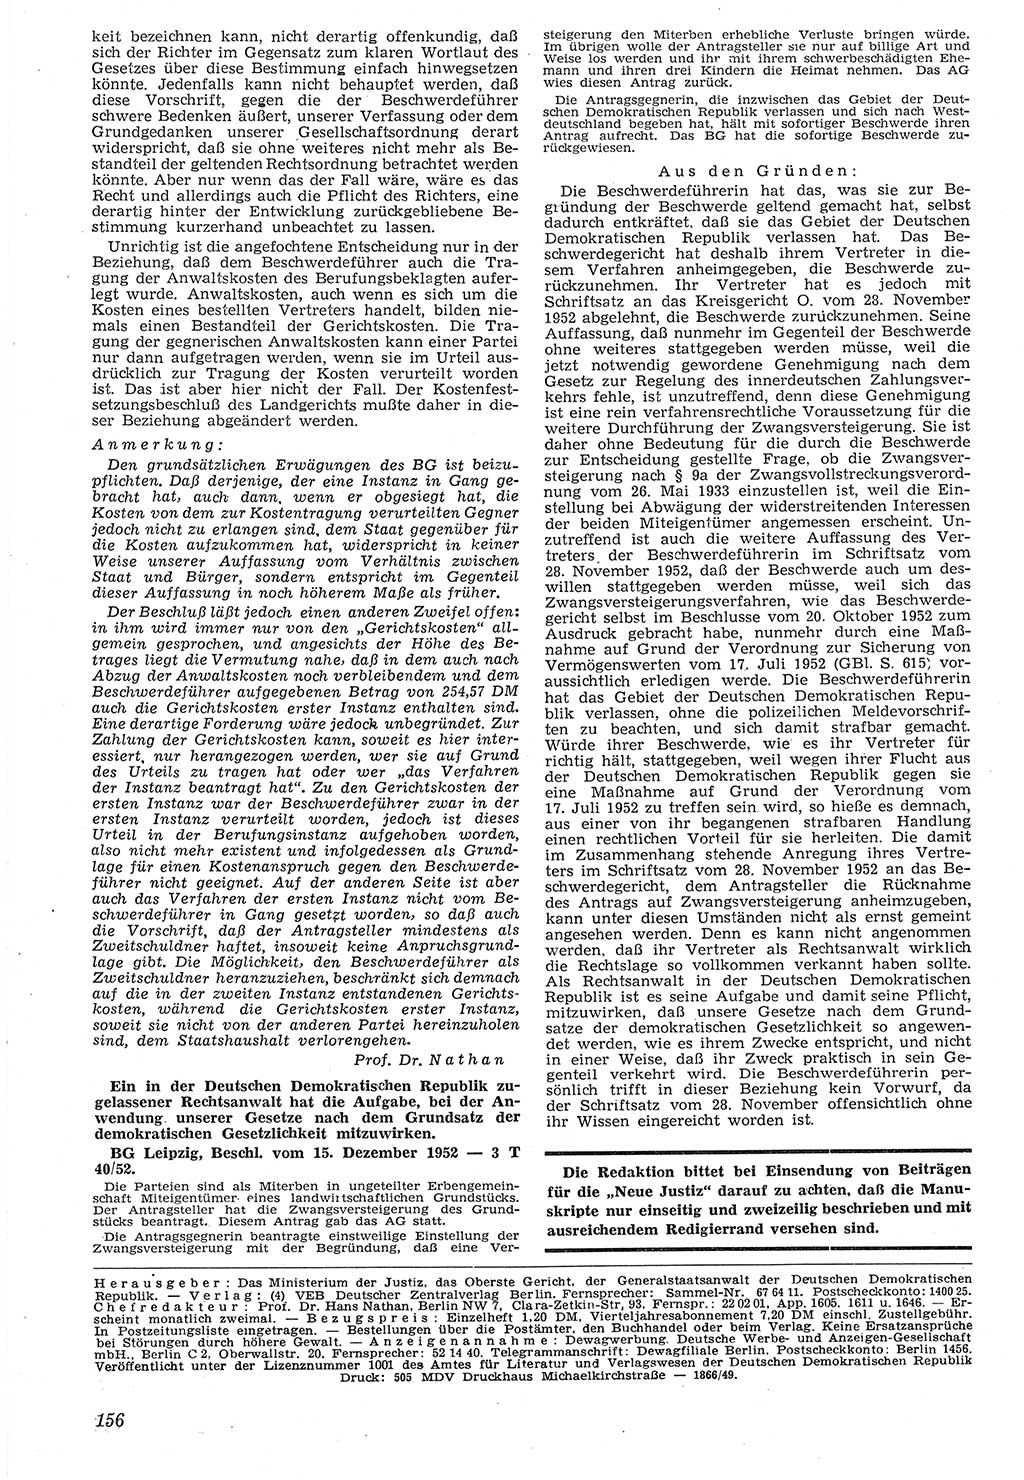 Neue Justiz (NJ), Zeitschrift für Recht und Rechtswissenschaft [Deutsche Demokratische Republik (DDR)], 7. Jahrgang 1953, Seite 156 (NJ DDR 1953, S. 156)